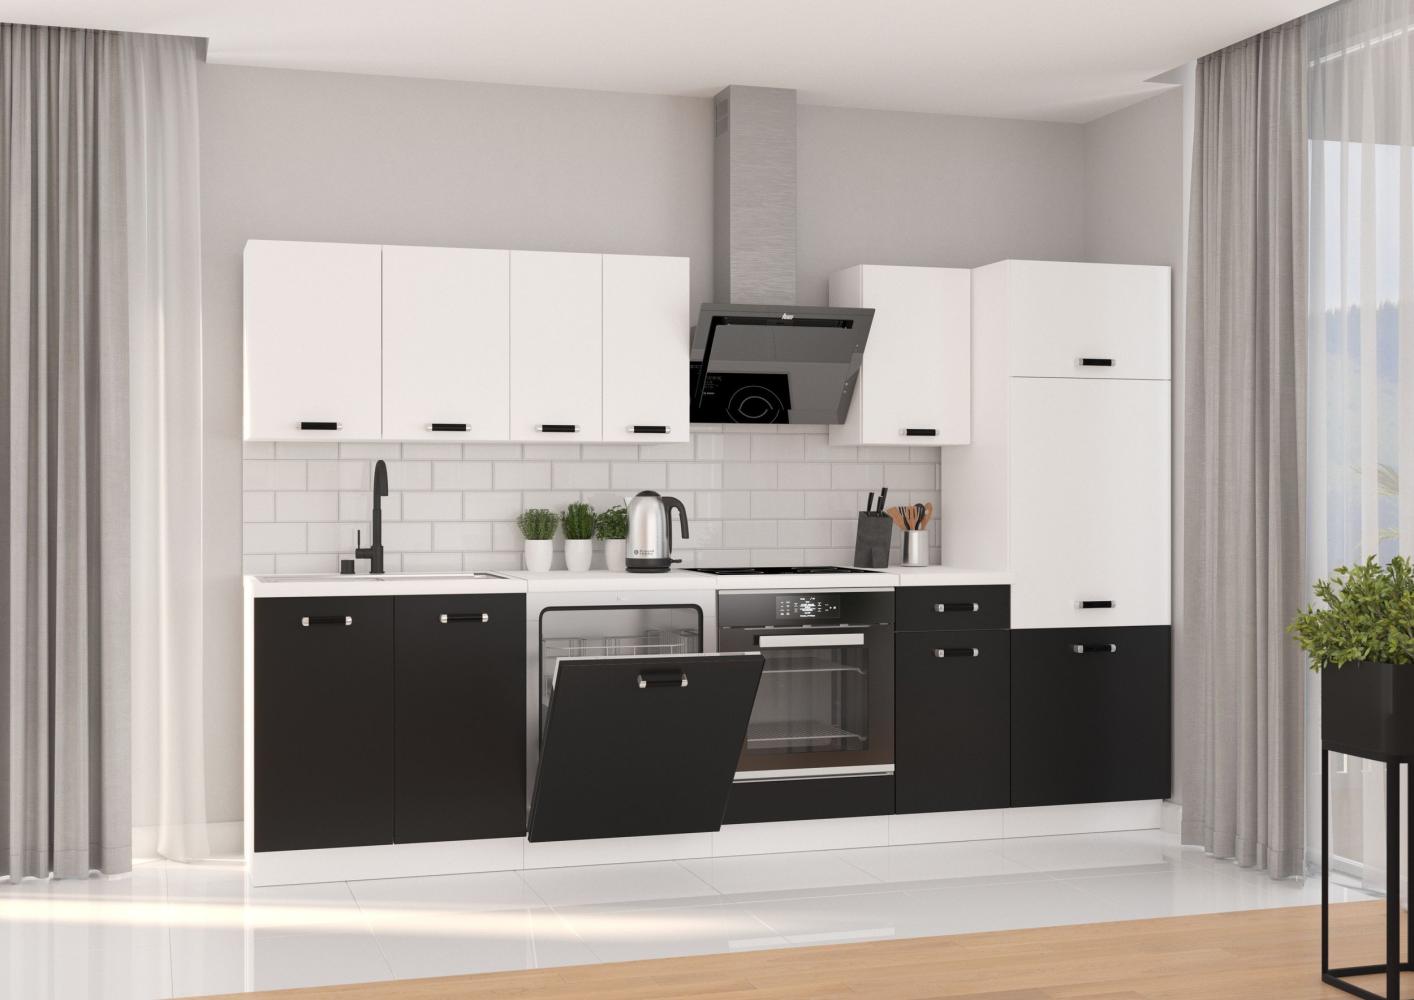 Küche Omega XL Küchenzeile Küchenblock Einbauküche, Schwarz + Weiß matt, 300 cm Bild 1